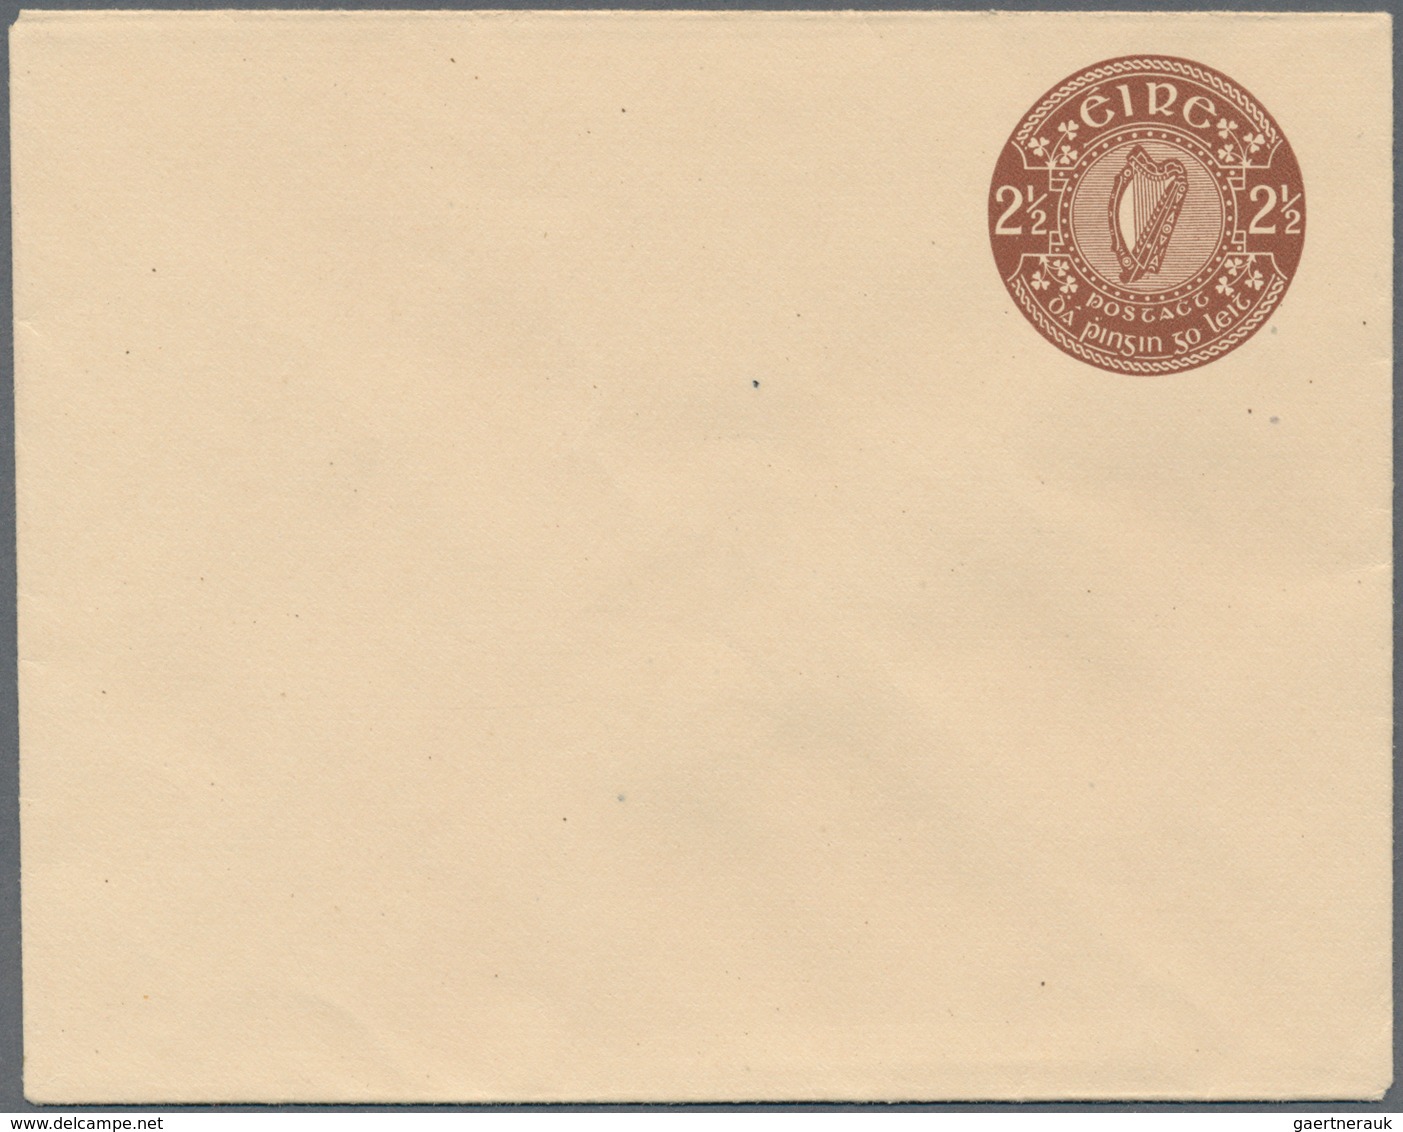 26850 Irland - Ganzsachen: 1924/2012, umfangreiche Spezial-Sammlung "Ganzsachen-Umschläge" mit vielen unge